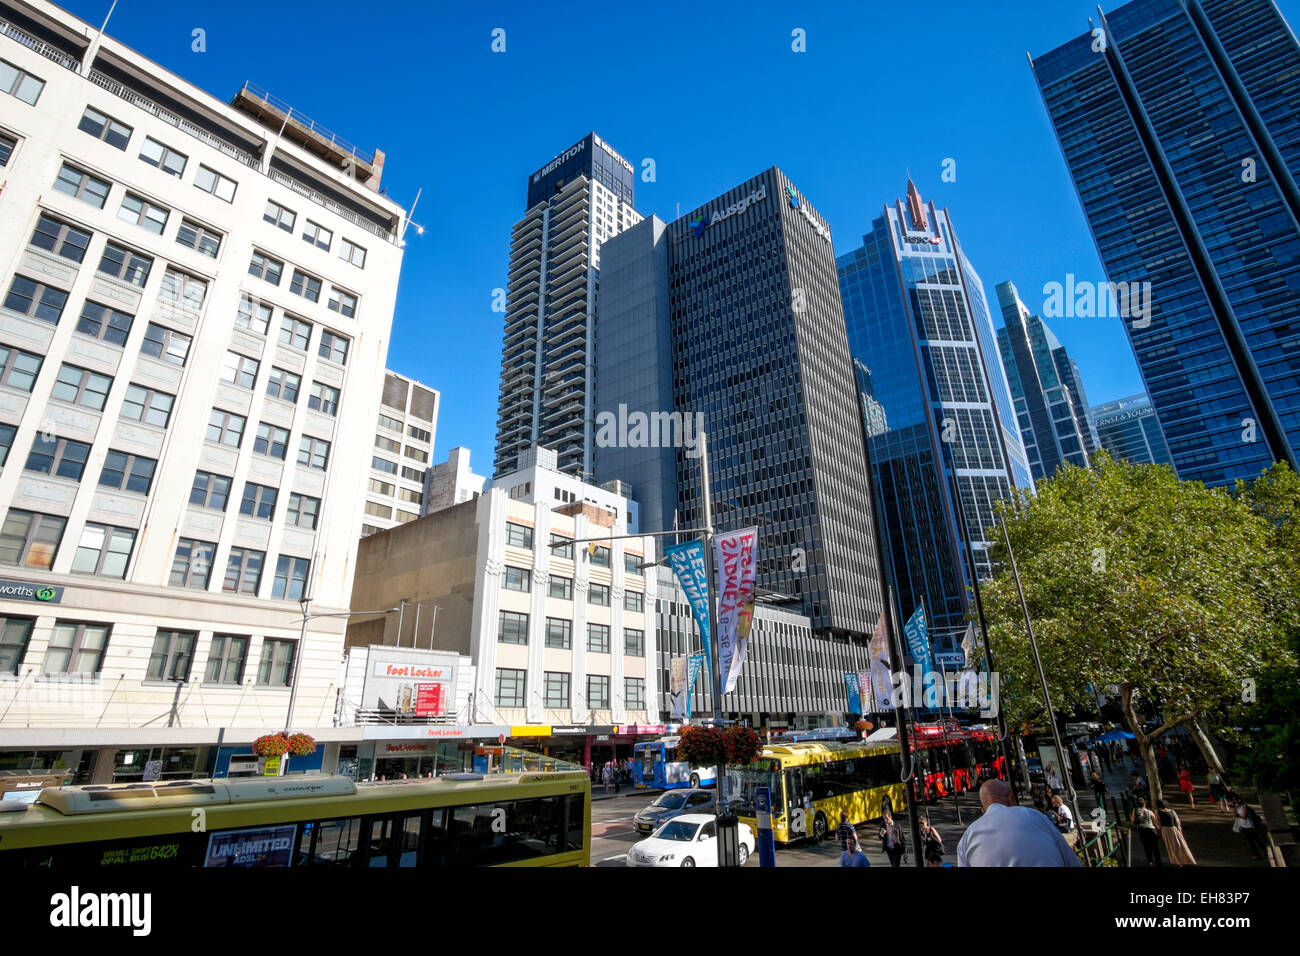 George Street, la strada principale che porta direttamente nel centro di Sydney, Australia; Town Hall Square; edifici alti; Sydney CBD; centro di Sydney; cityscape Foto Stock